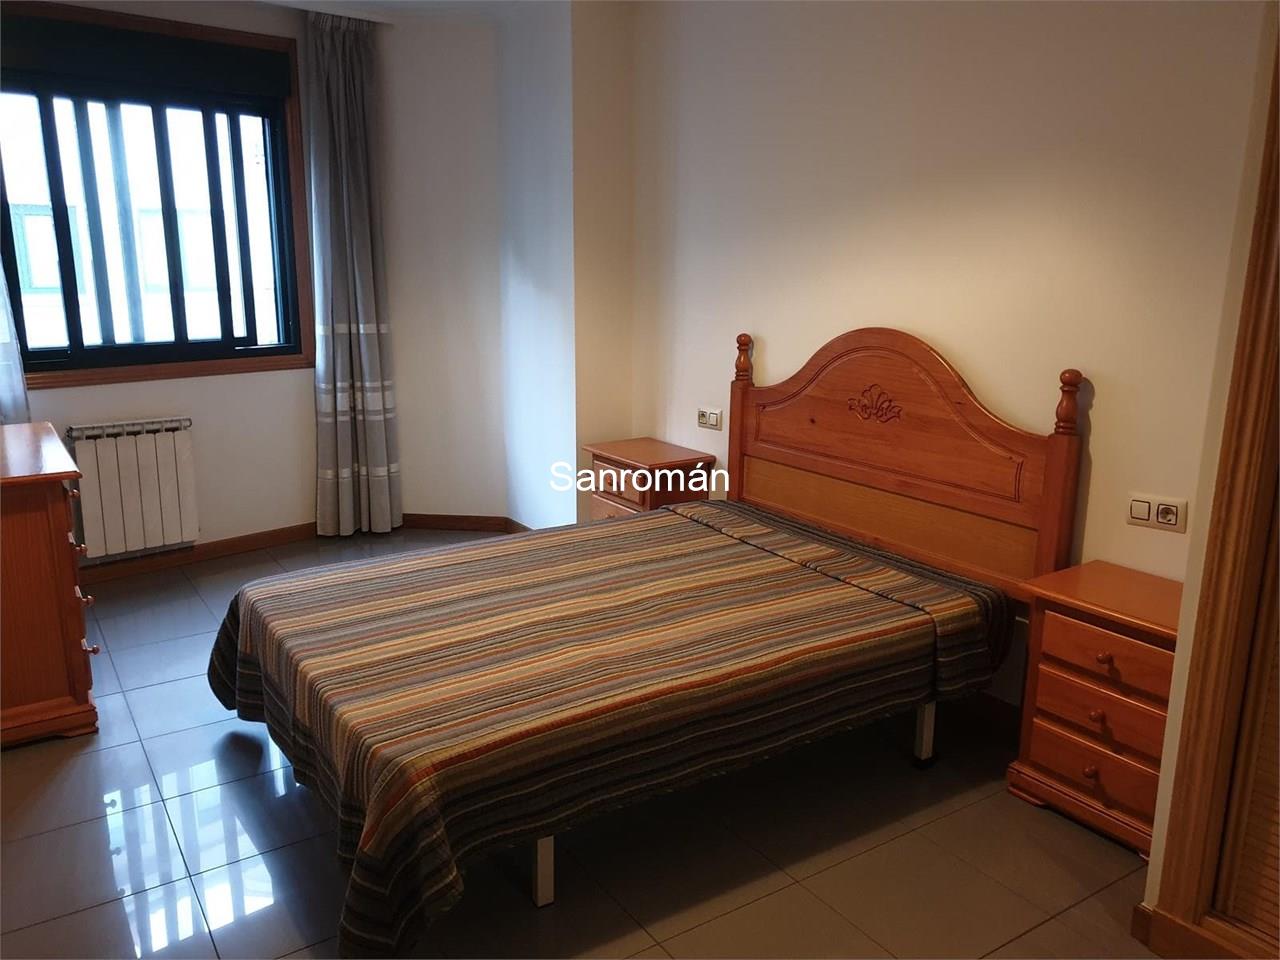 Foto 6 Apartamento de 2 dormitorios en Ramallosa - Nigrán. Muy buen estado. Alquiler anual.